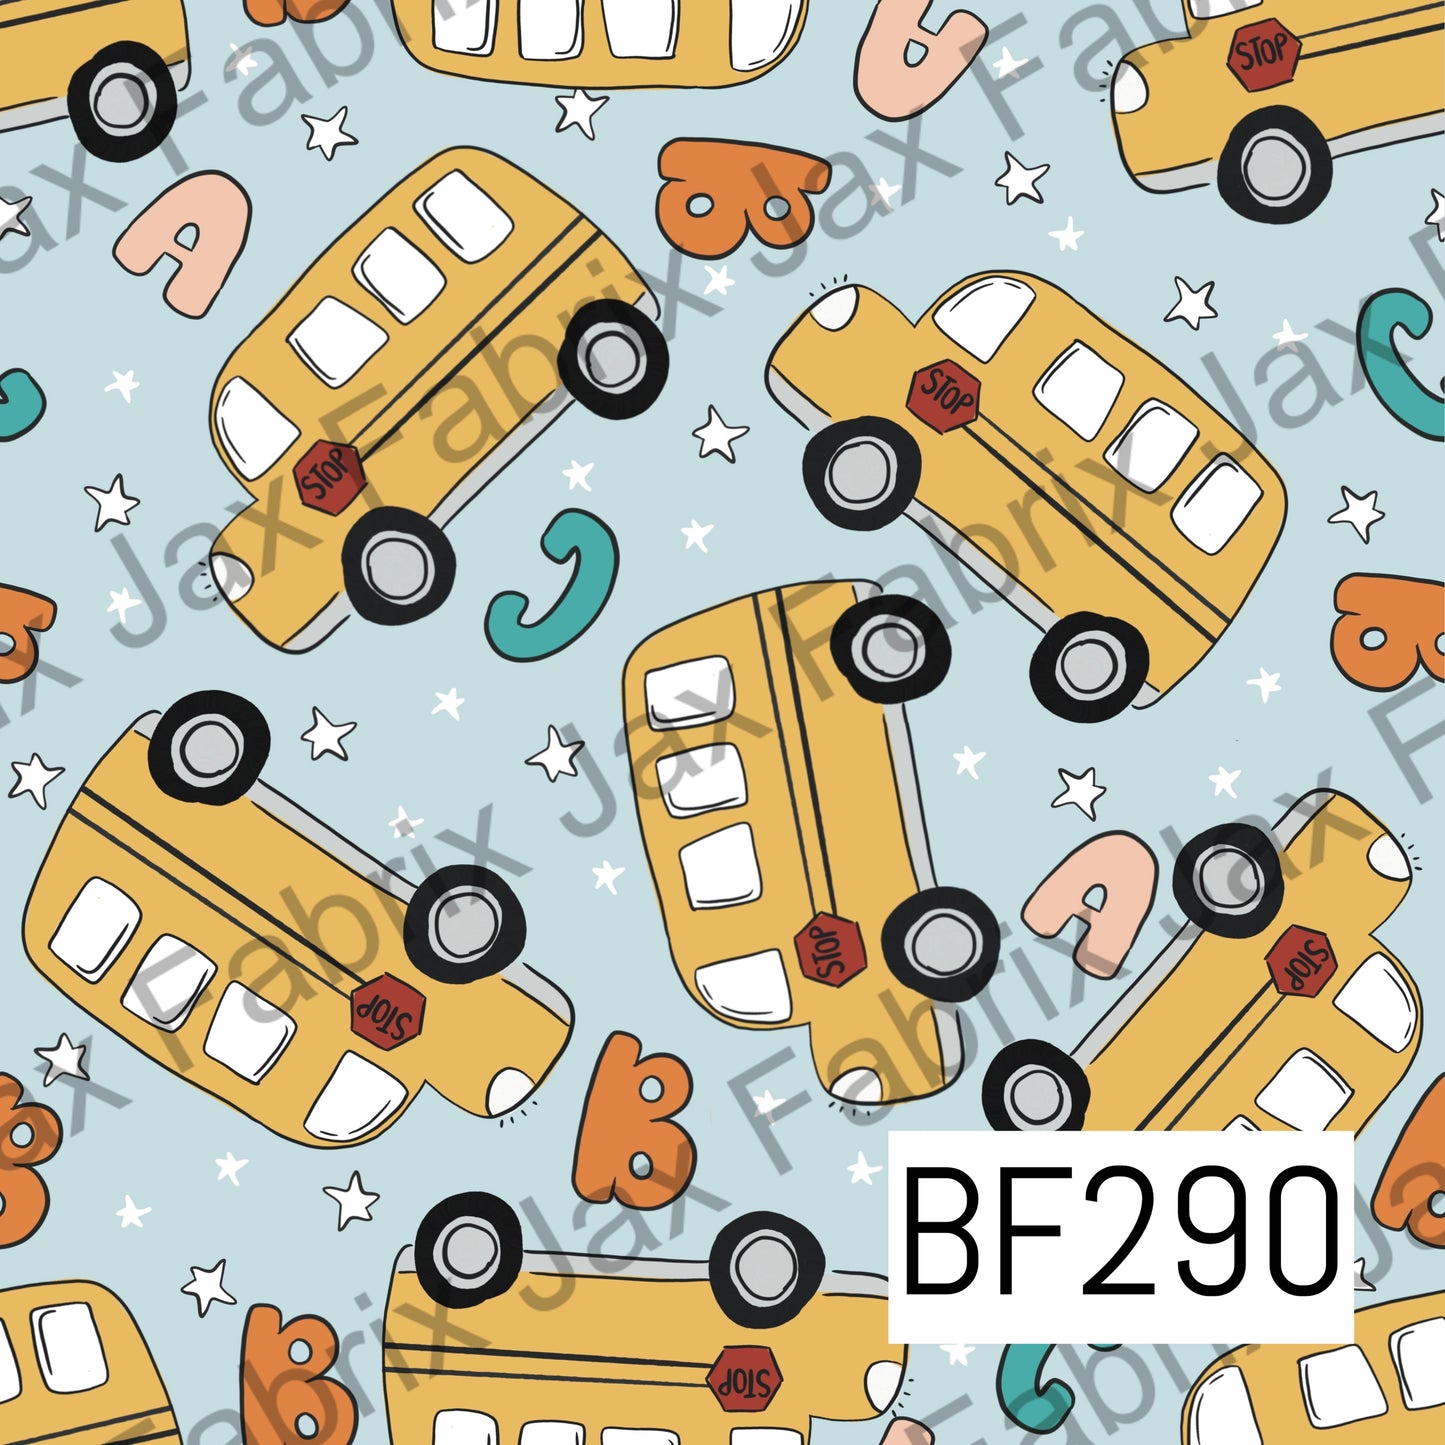 School Bus BF290